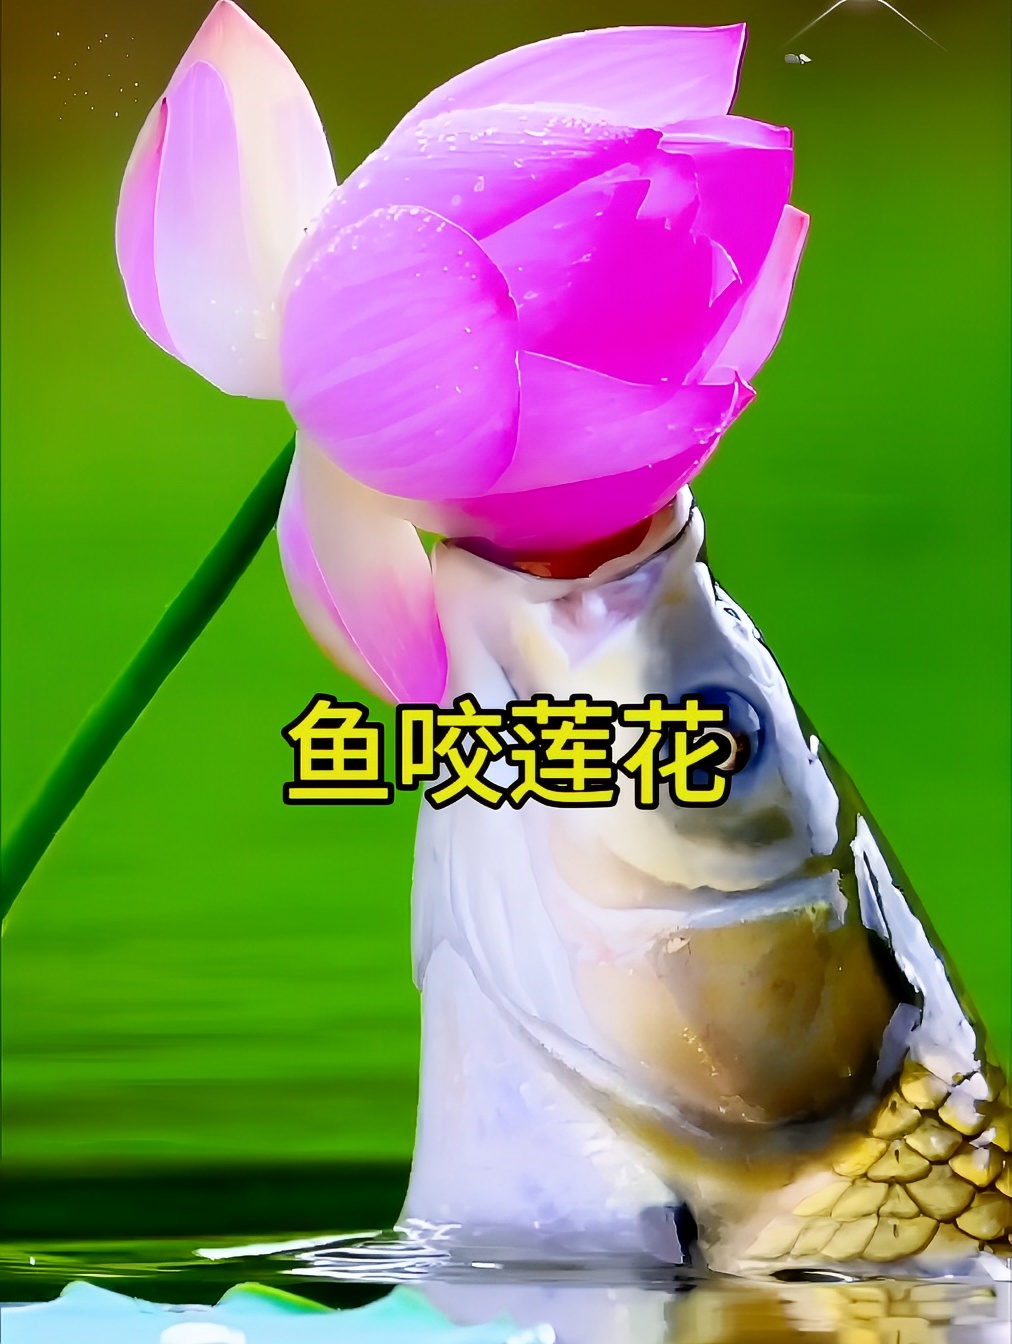 鱼咬莲花🪷好运连连，看见鲤鱼咬莲瓣，整天都有好运来